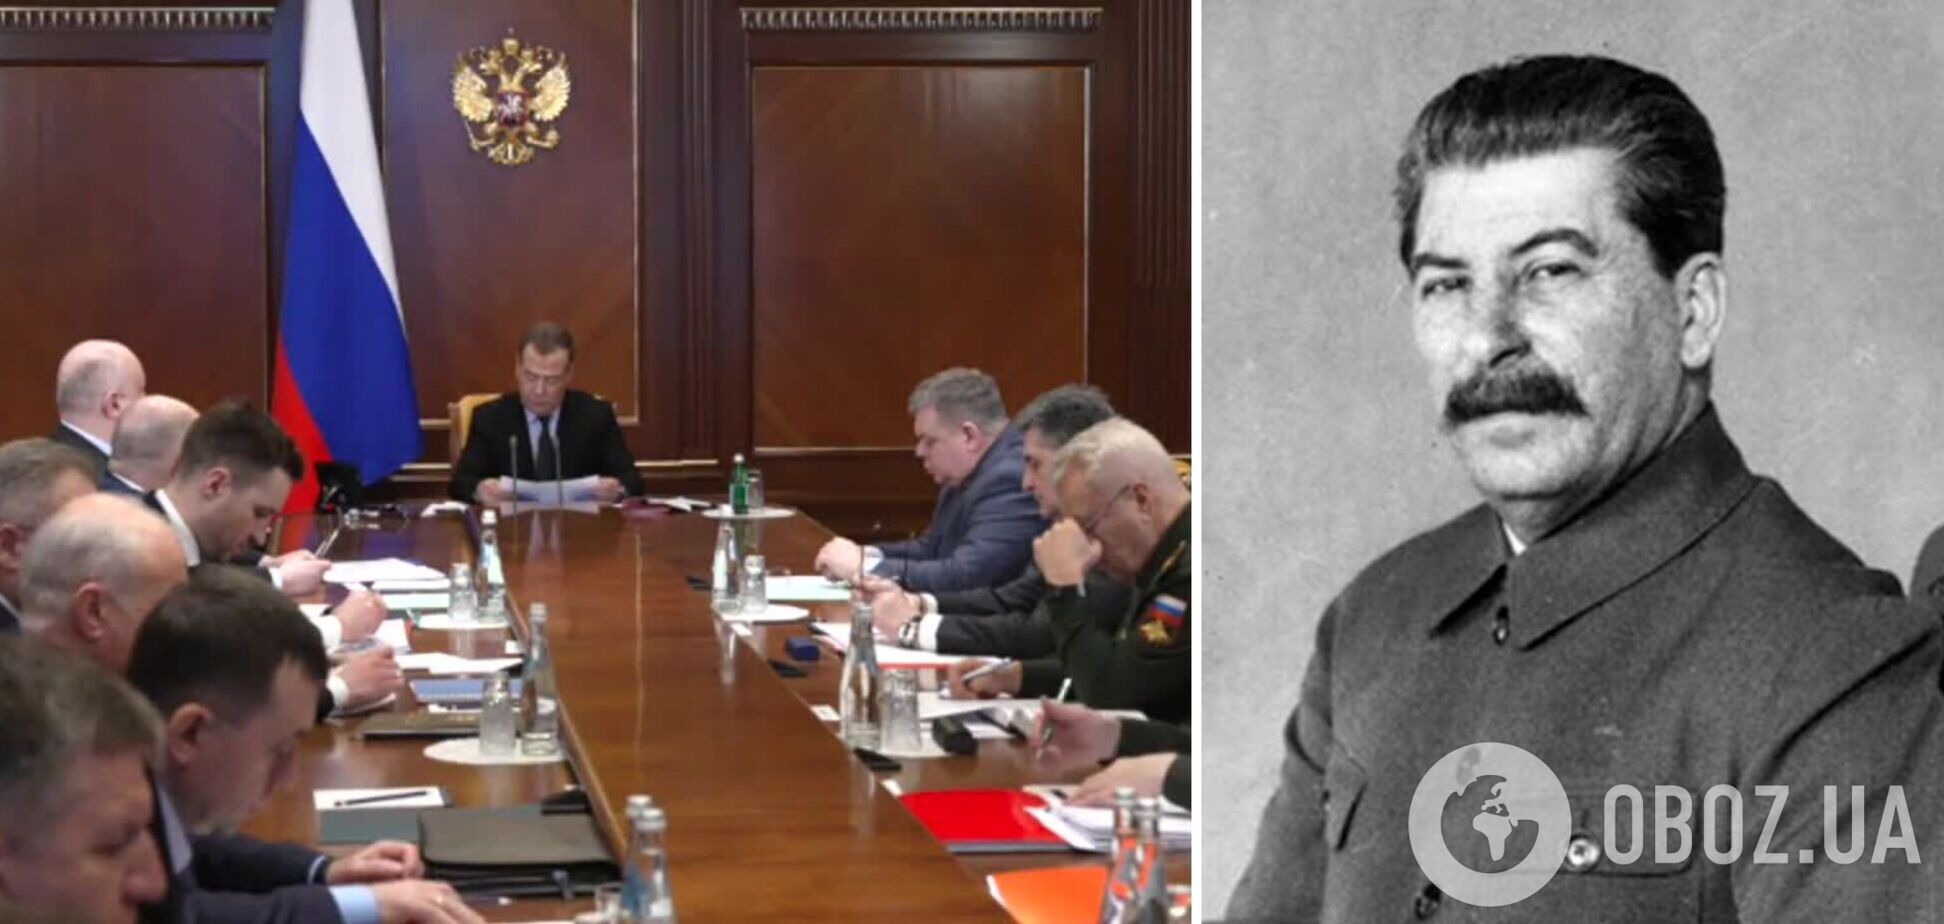 'Скоро начну вас громить, как преступников': Медведев пригрозил директорам заводов ВПК, представив себя Сталиным. Видео